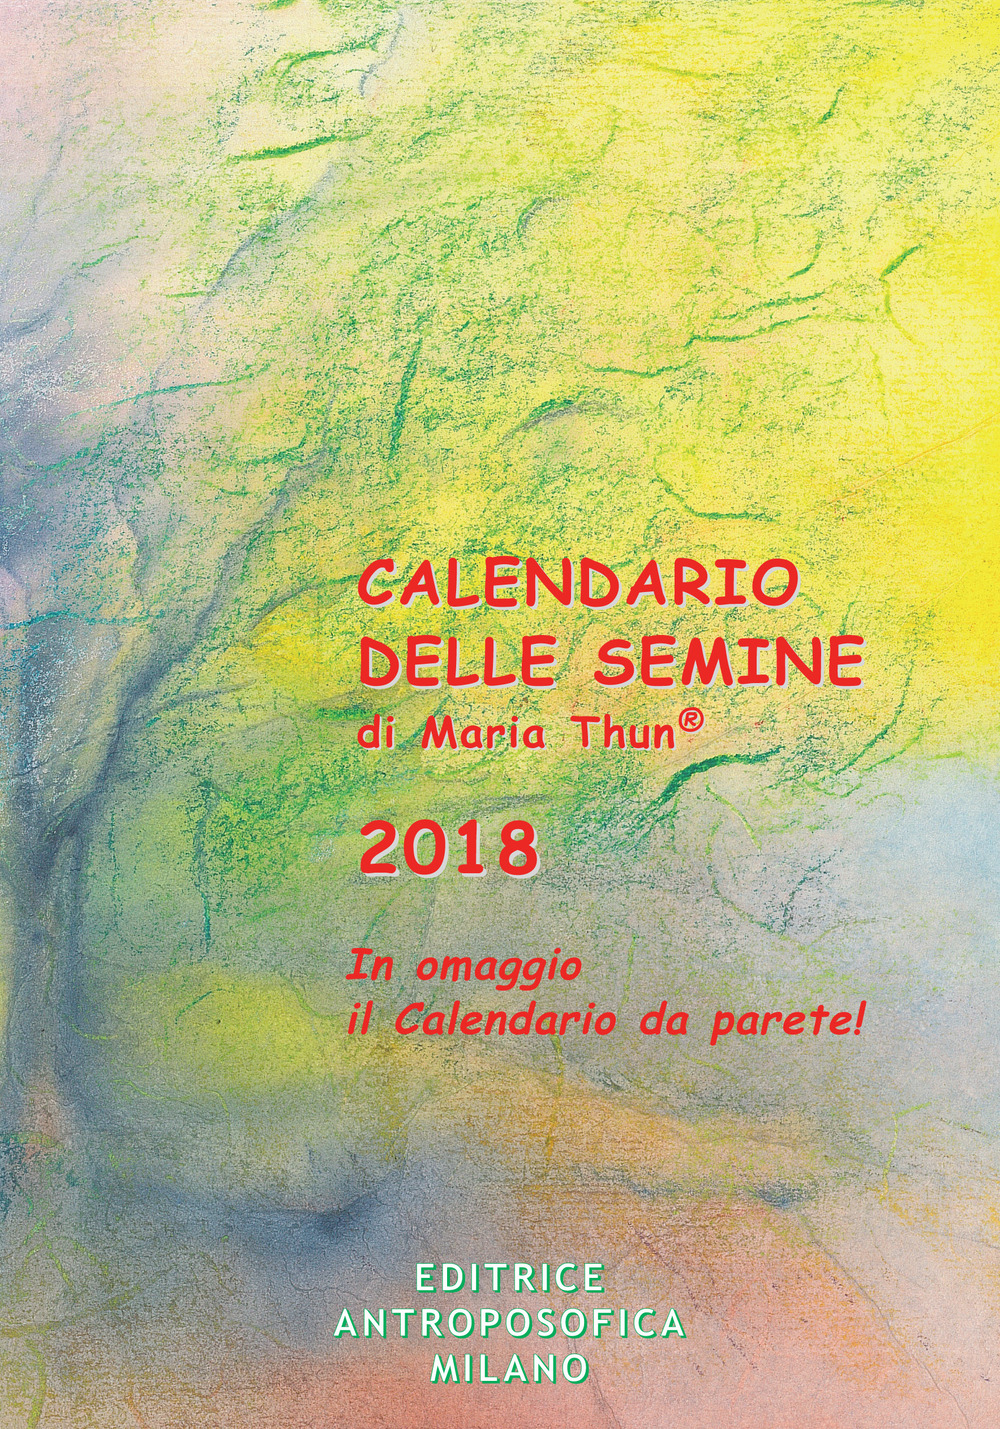 Image of Calendario delle semine 2018. Con poster calendario